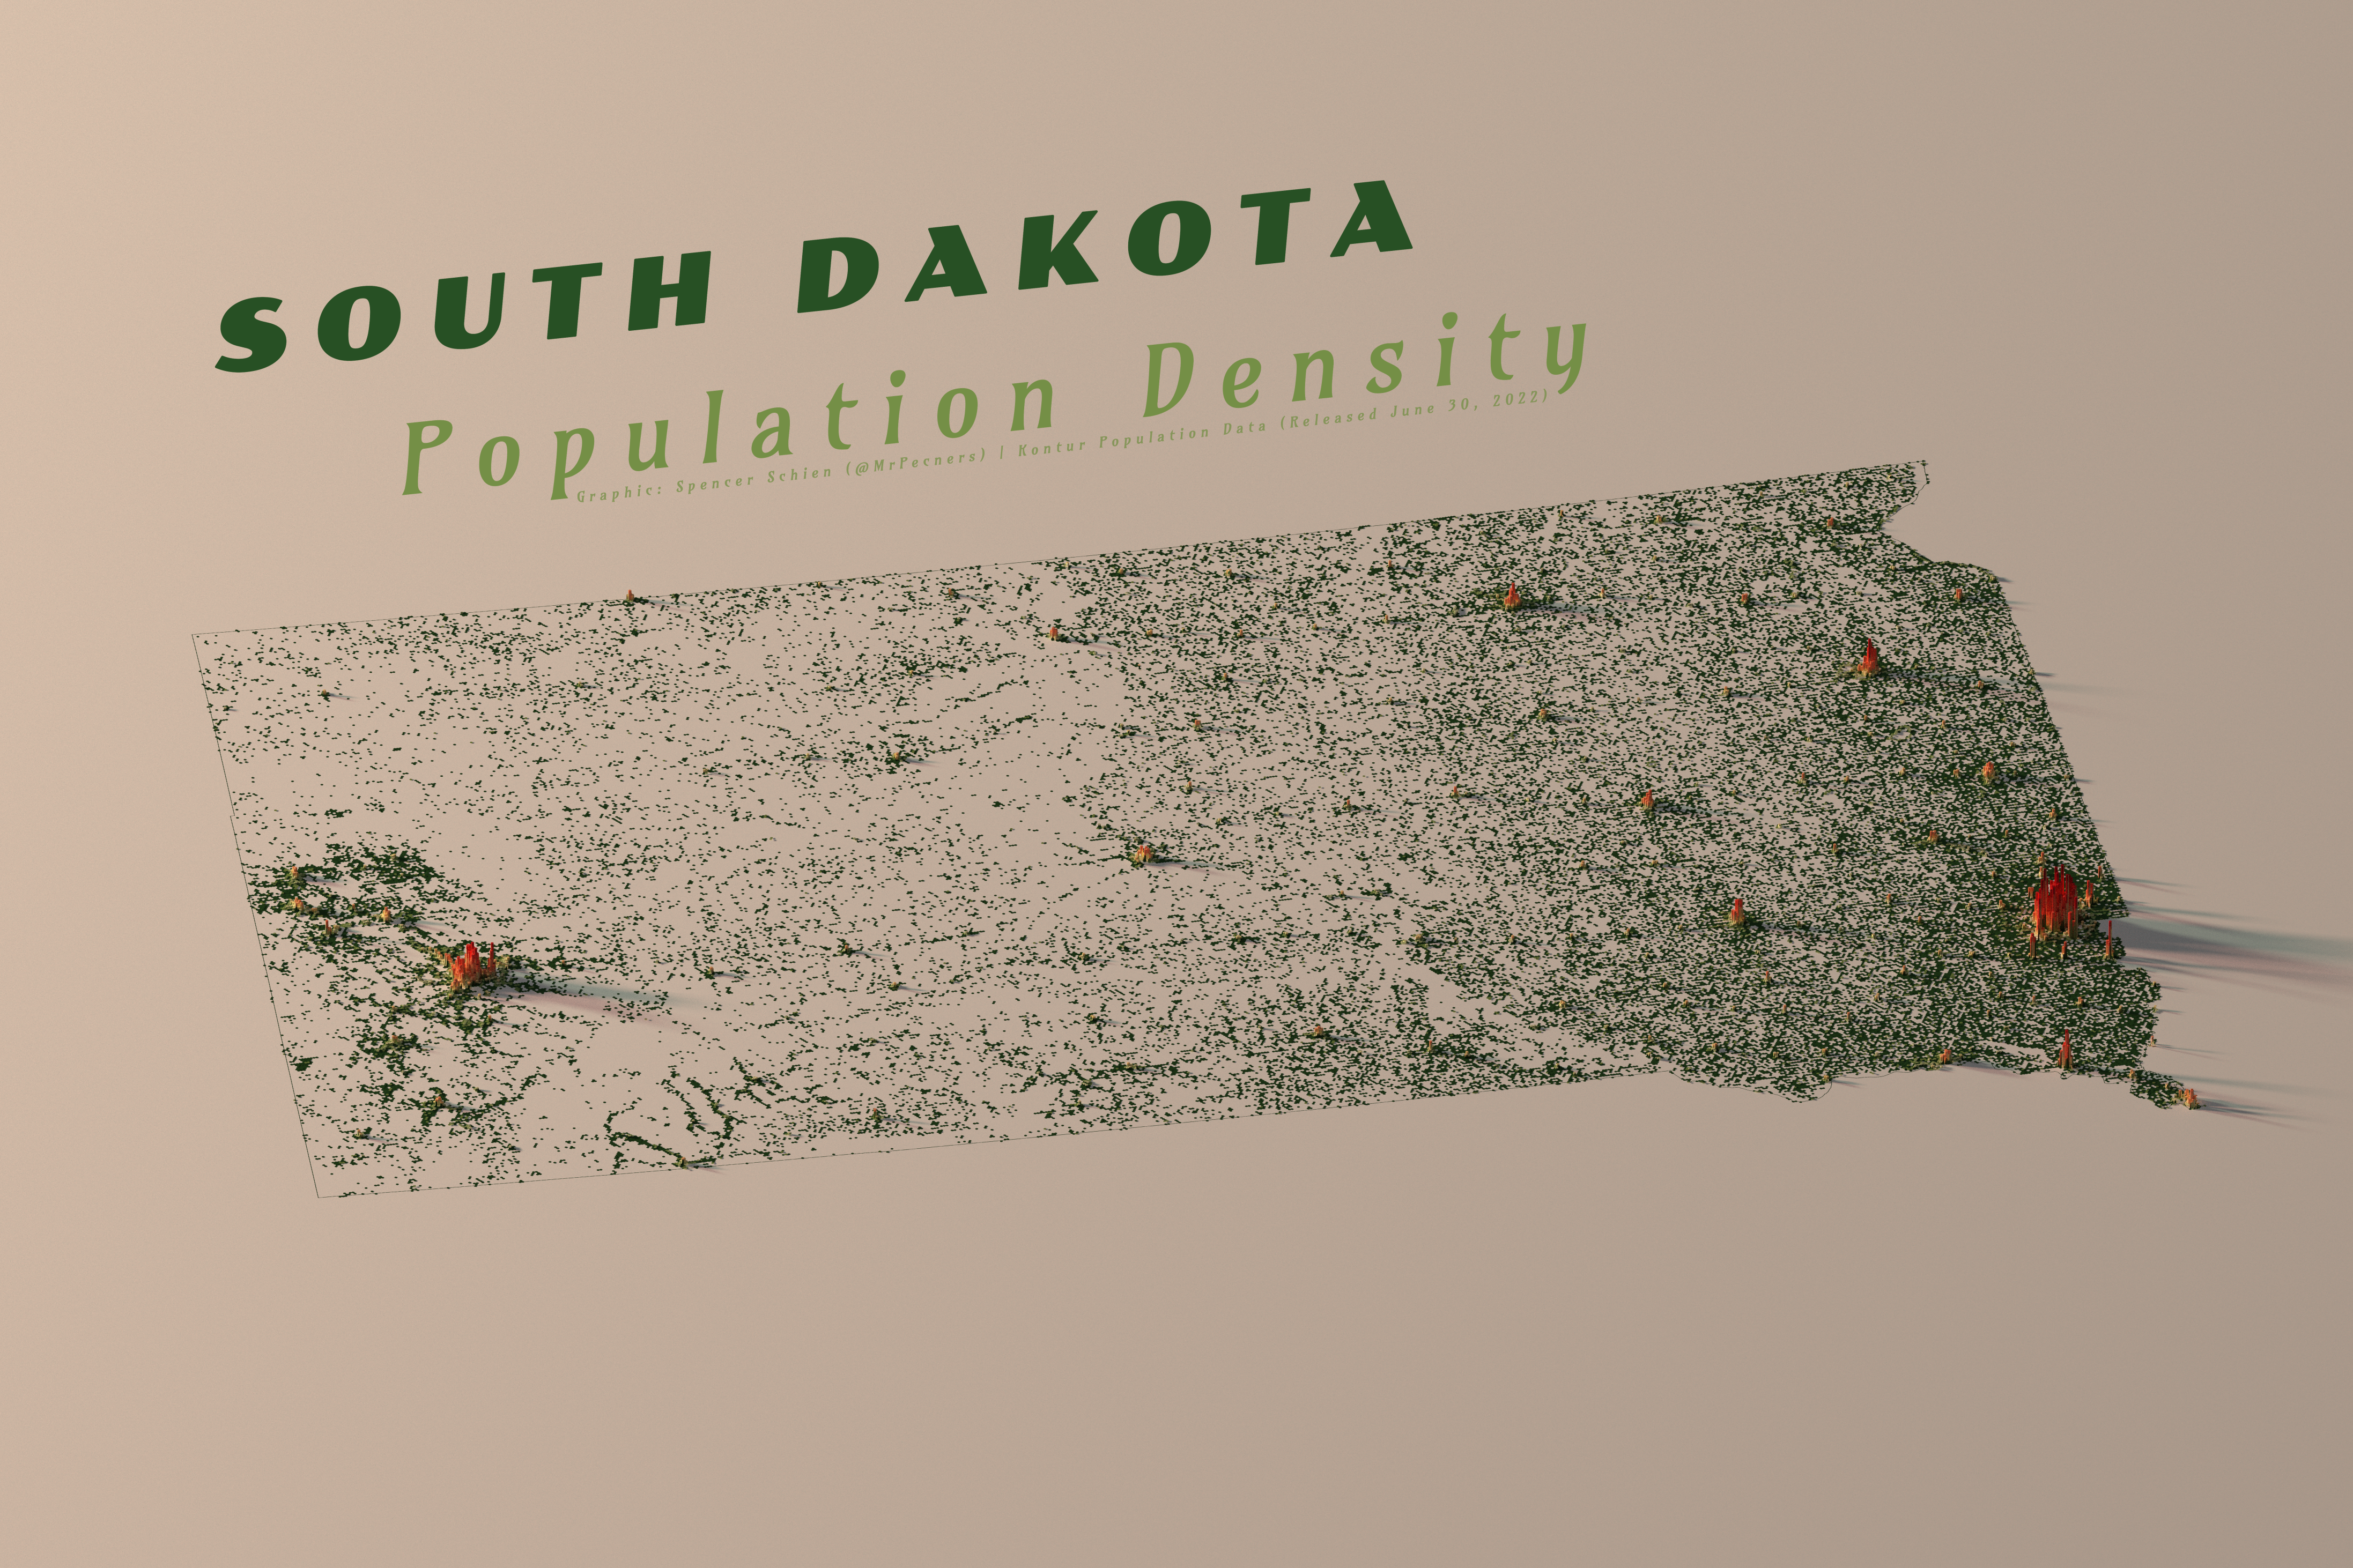 South Dakota Population Density